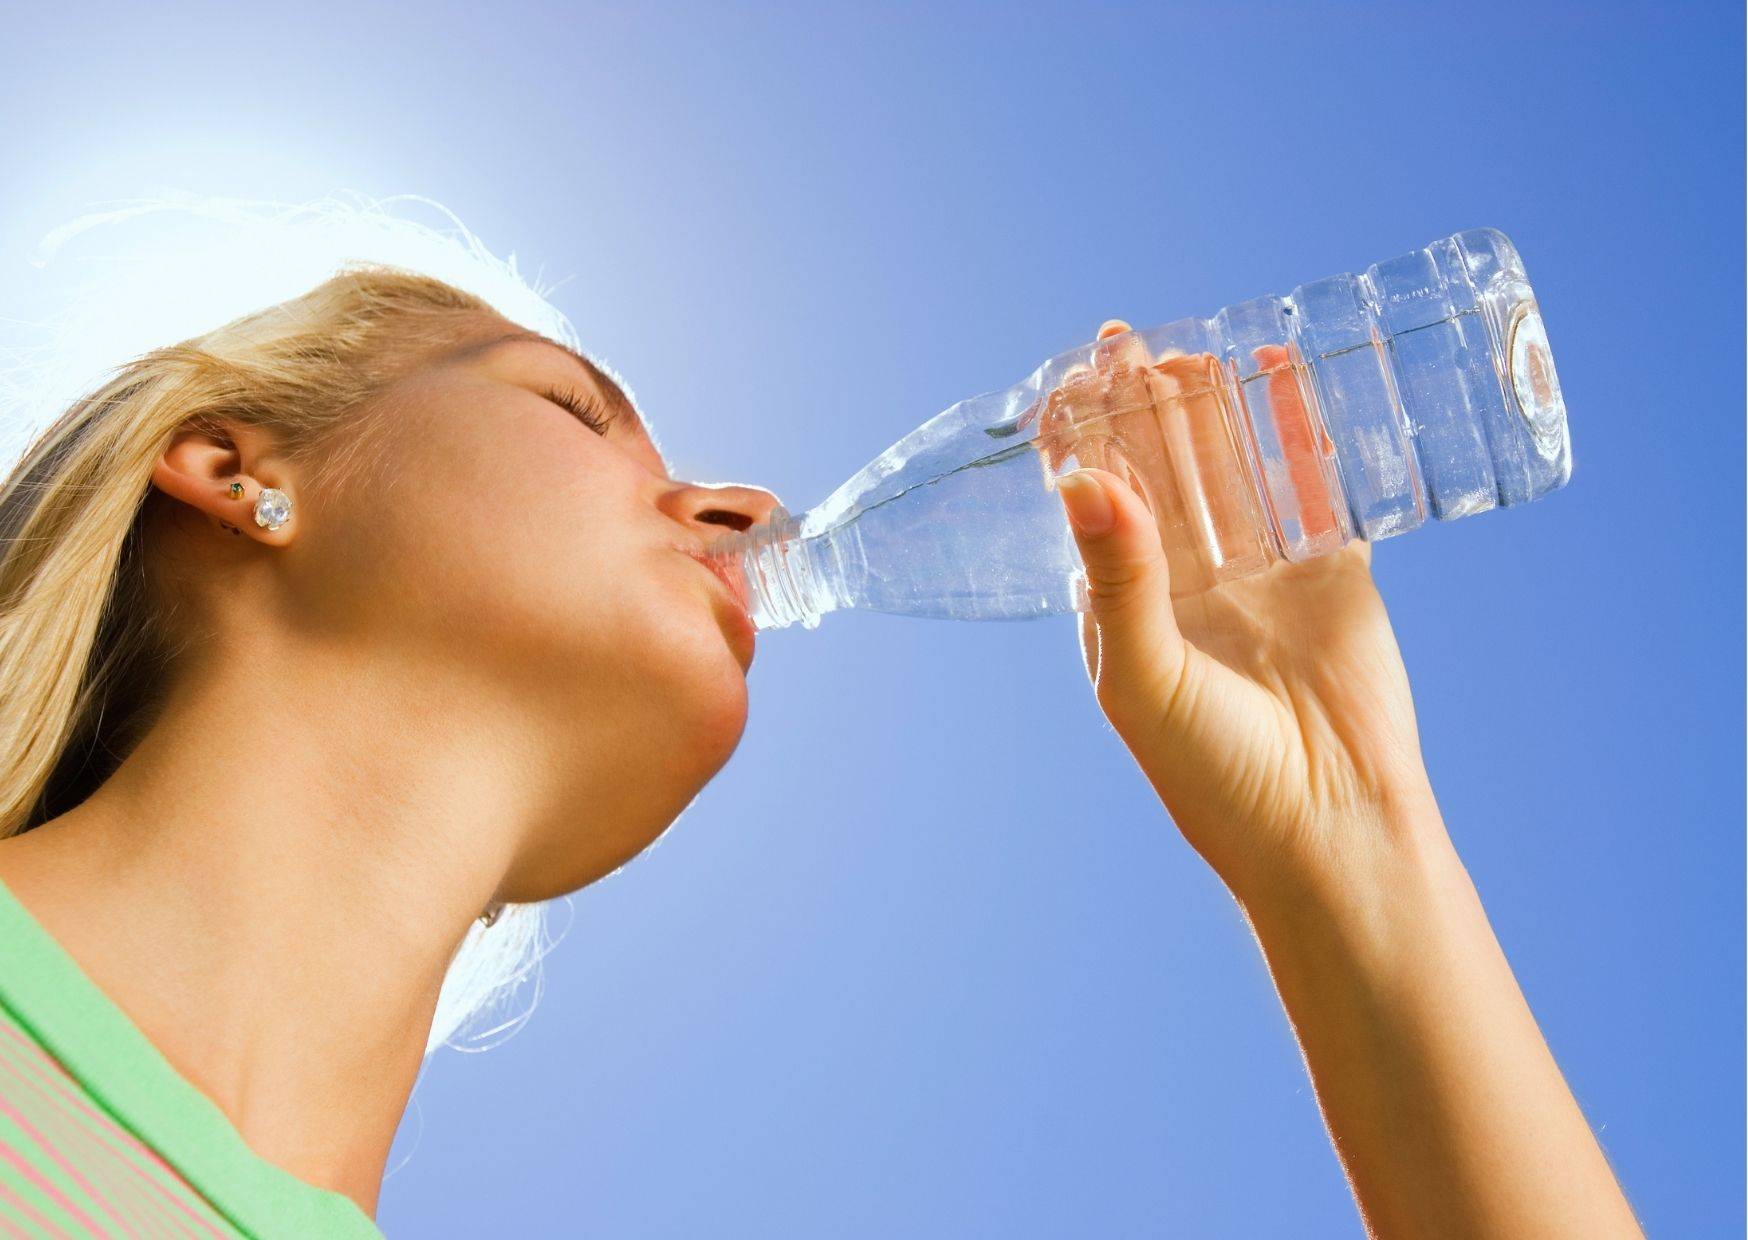 Как пить водичку